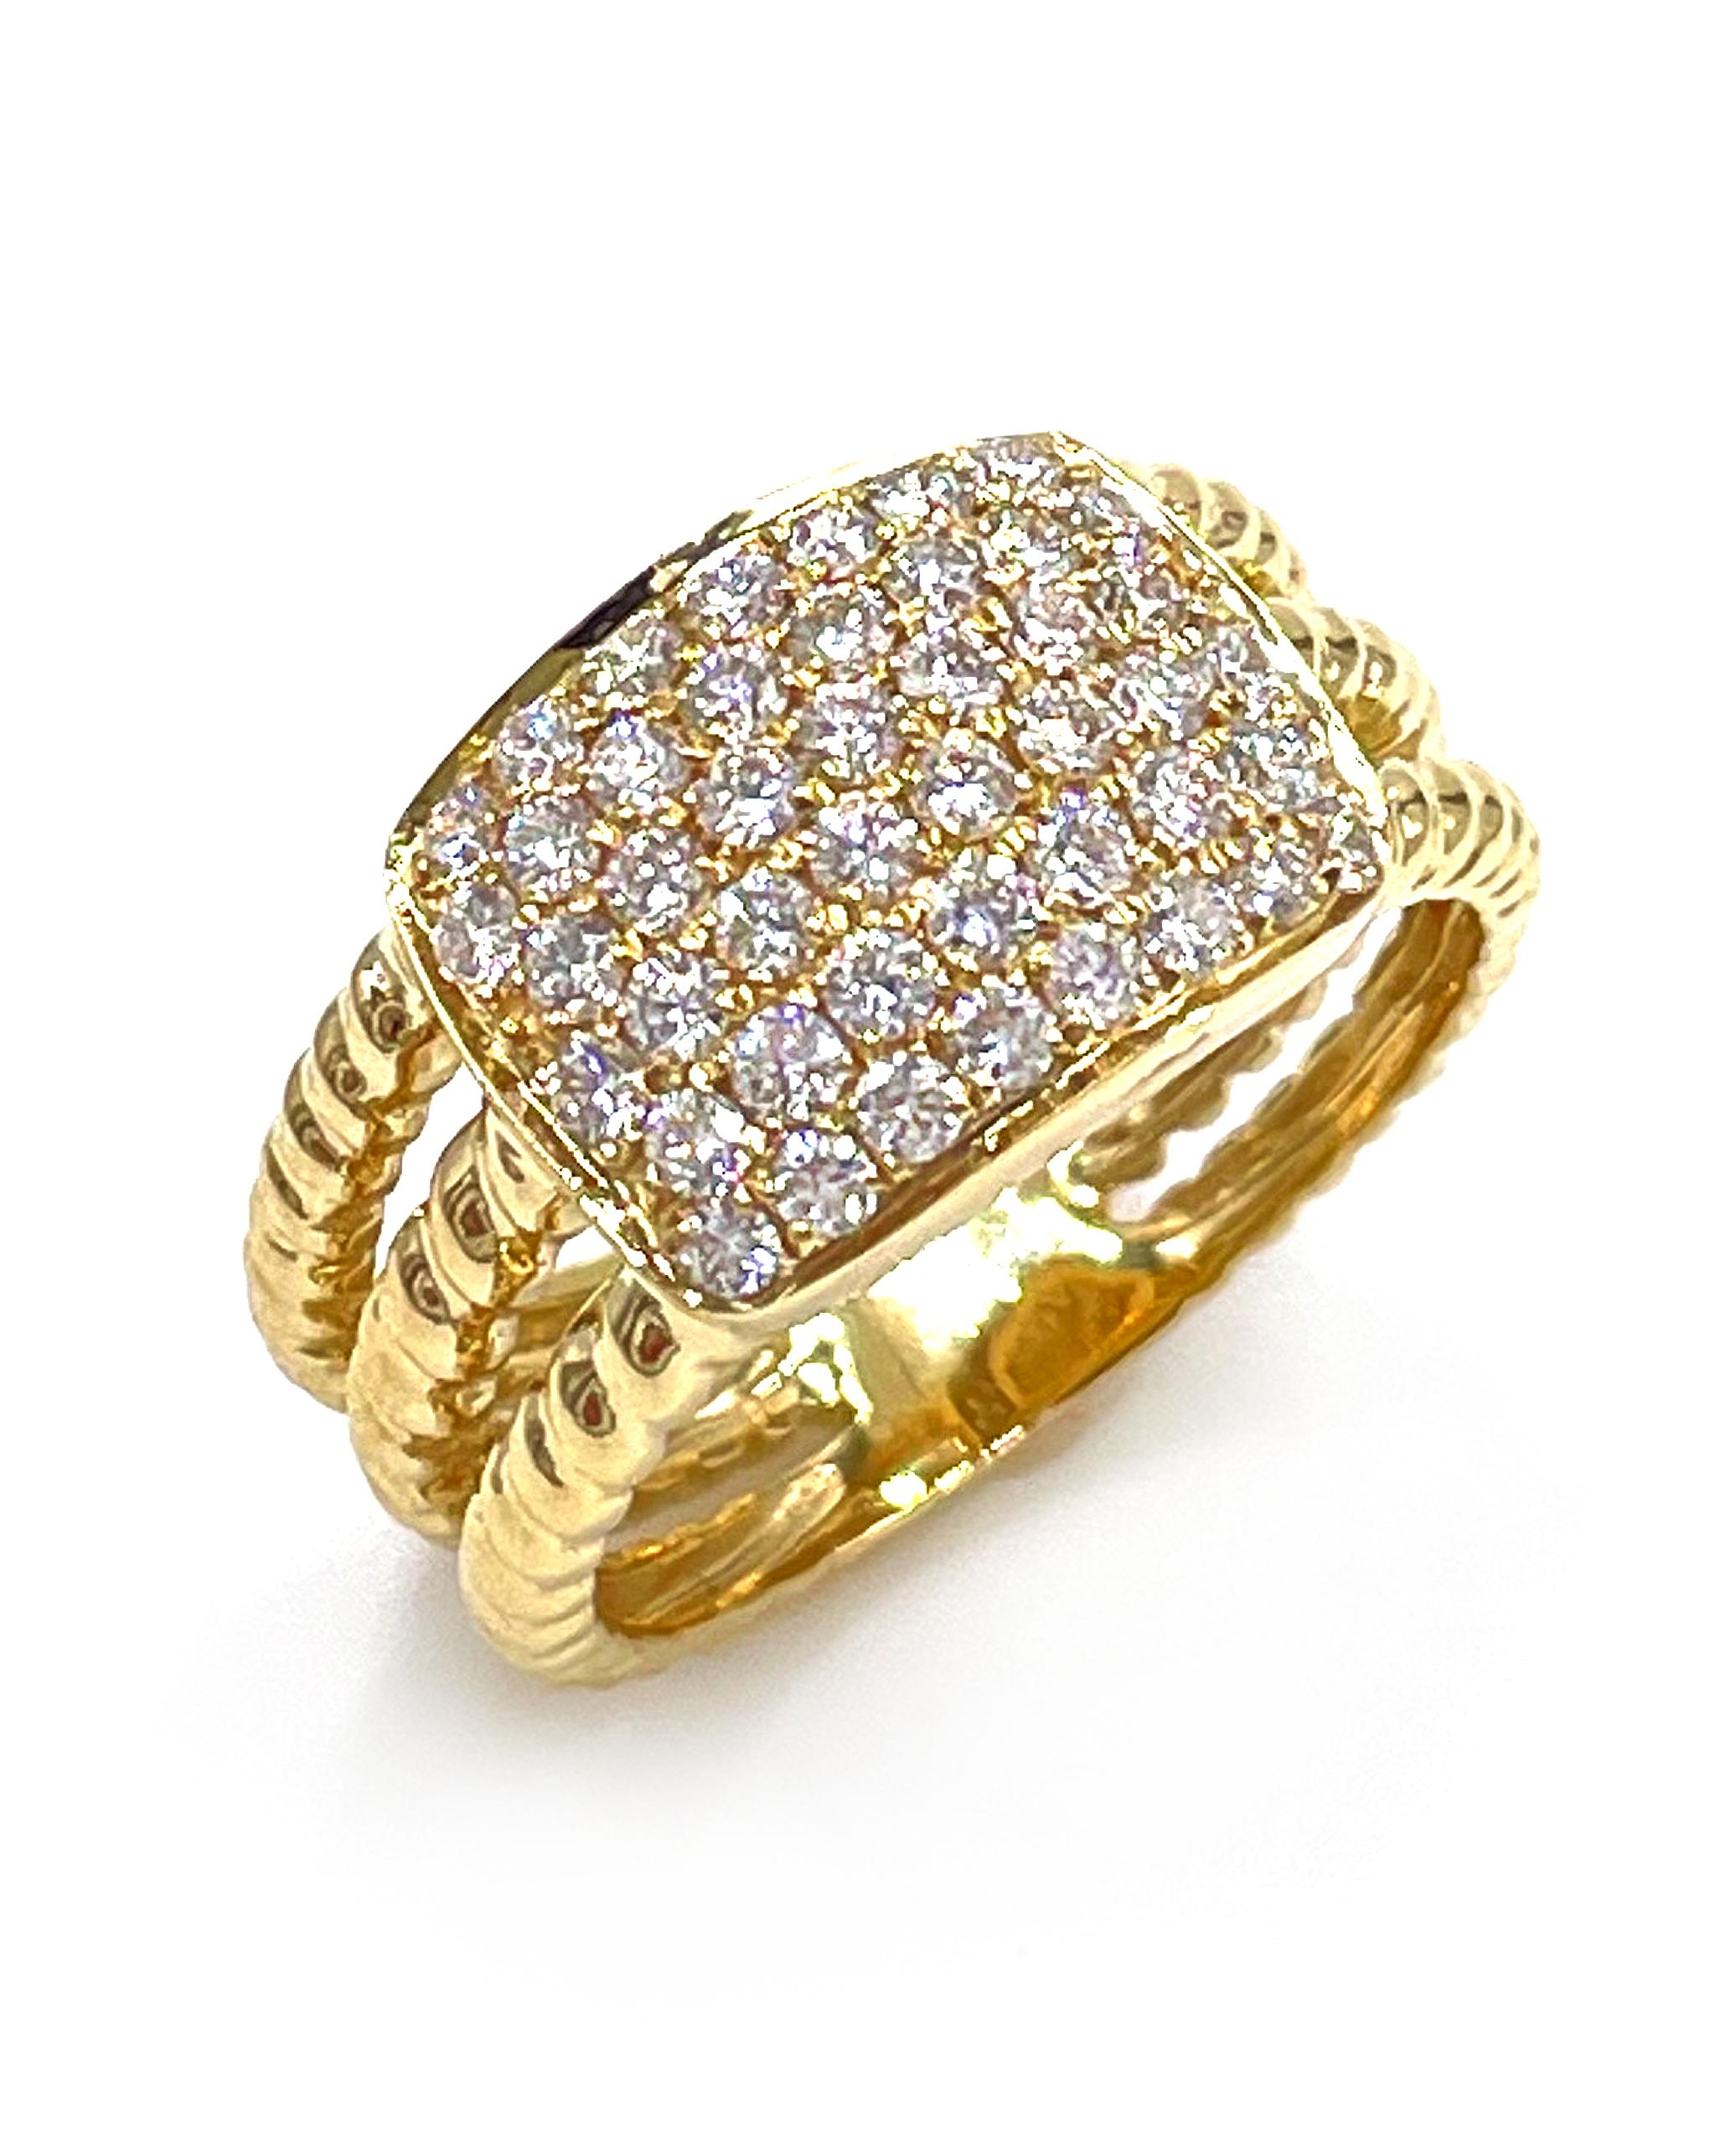 Ring aus 18 Karat Gelbgold mit 3 Seilreihen. In der Mitte eine rechteckige Form, besetzt mit runden Diamanten im Brillantschliff von insgesamt 0,81 Karat.

- Farbe der Diamanten: G/H, Reinheit: VS2/SI1
- Die Oberseite des Rings ist 10,8 mm breit und